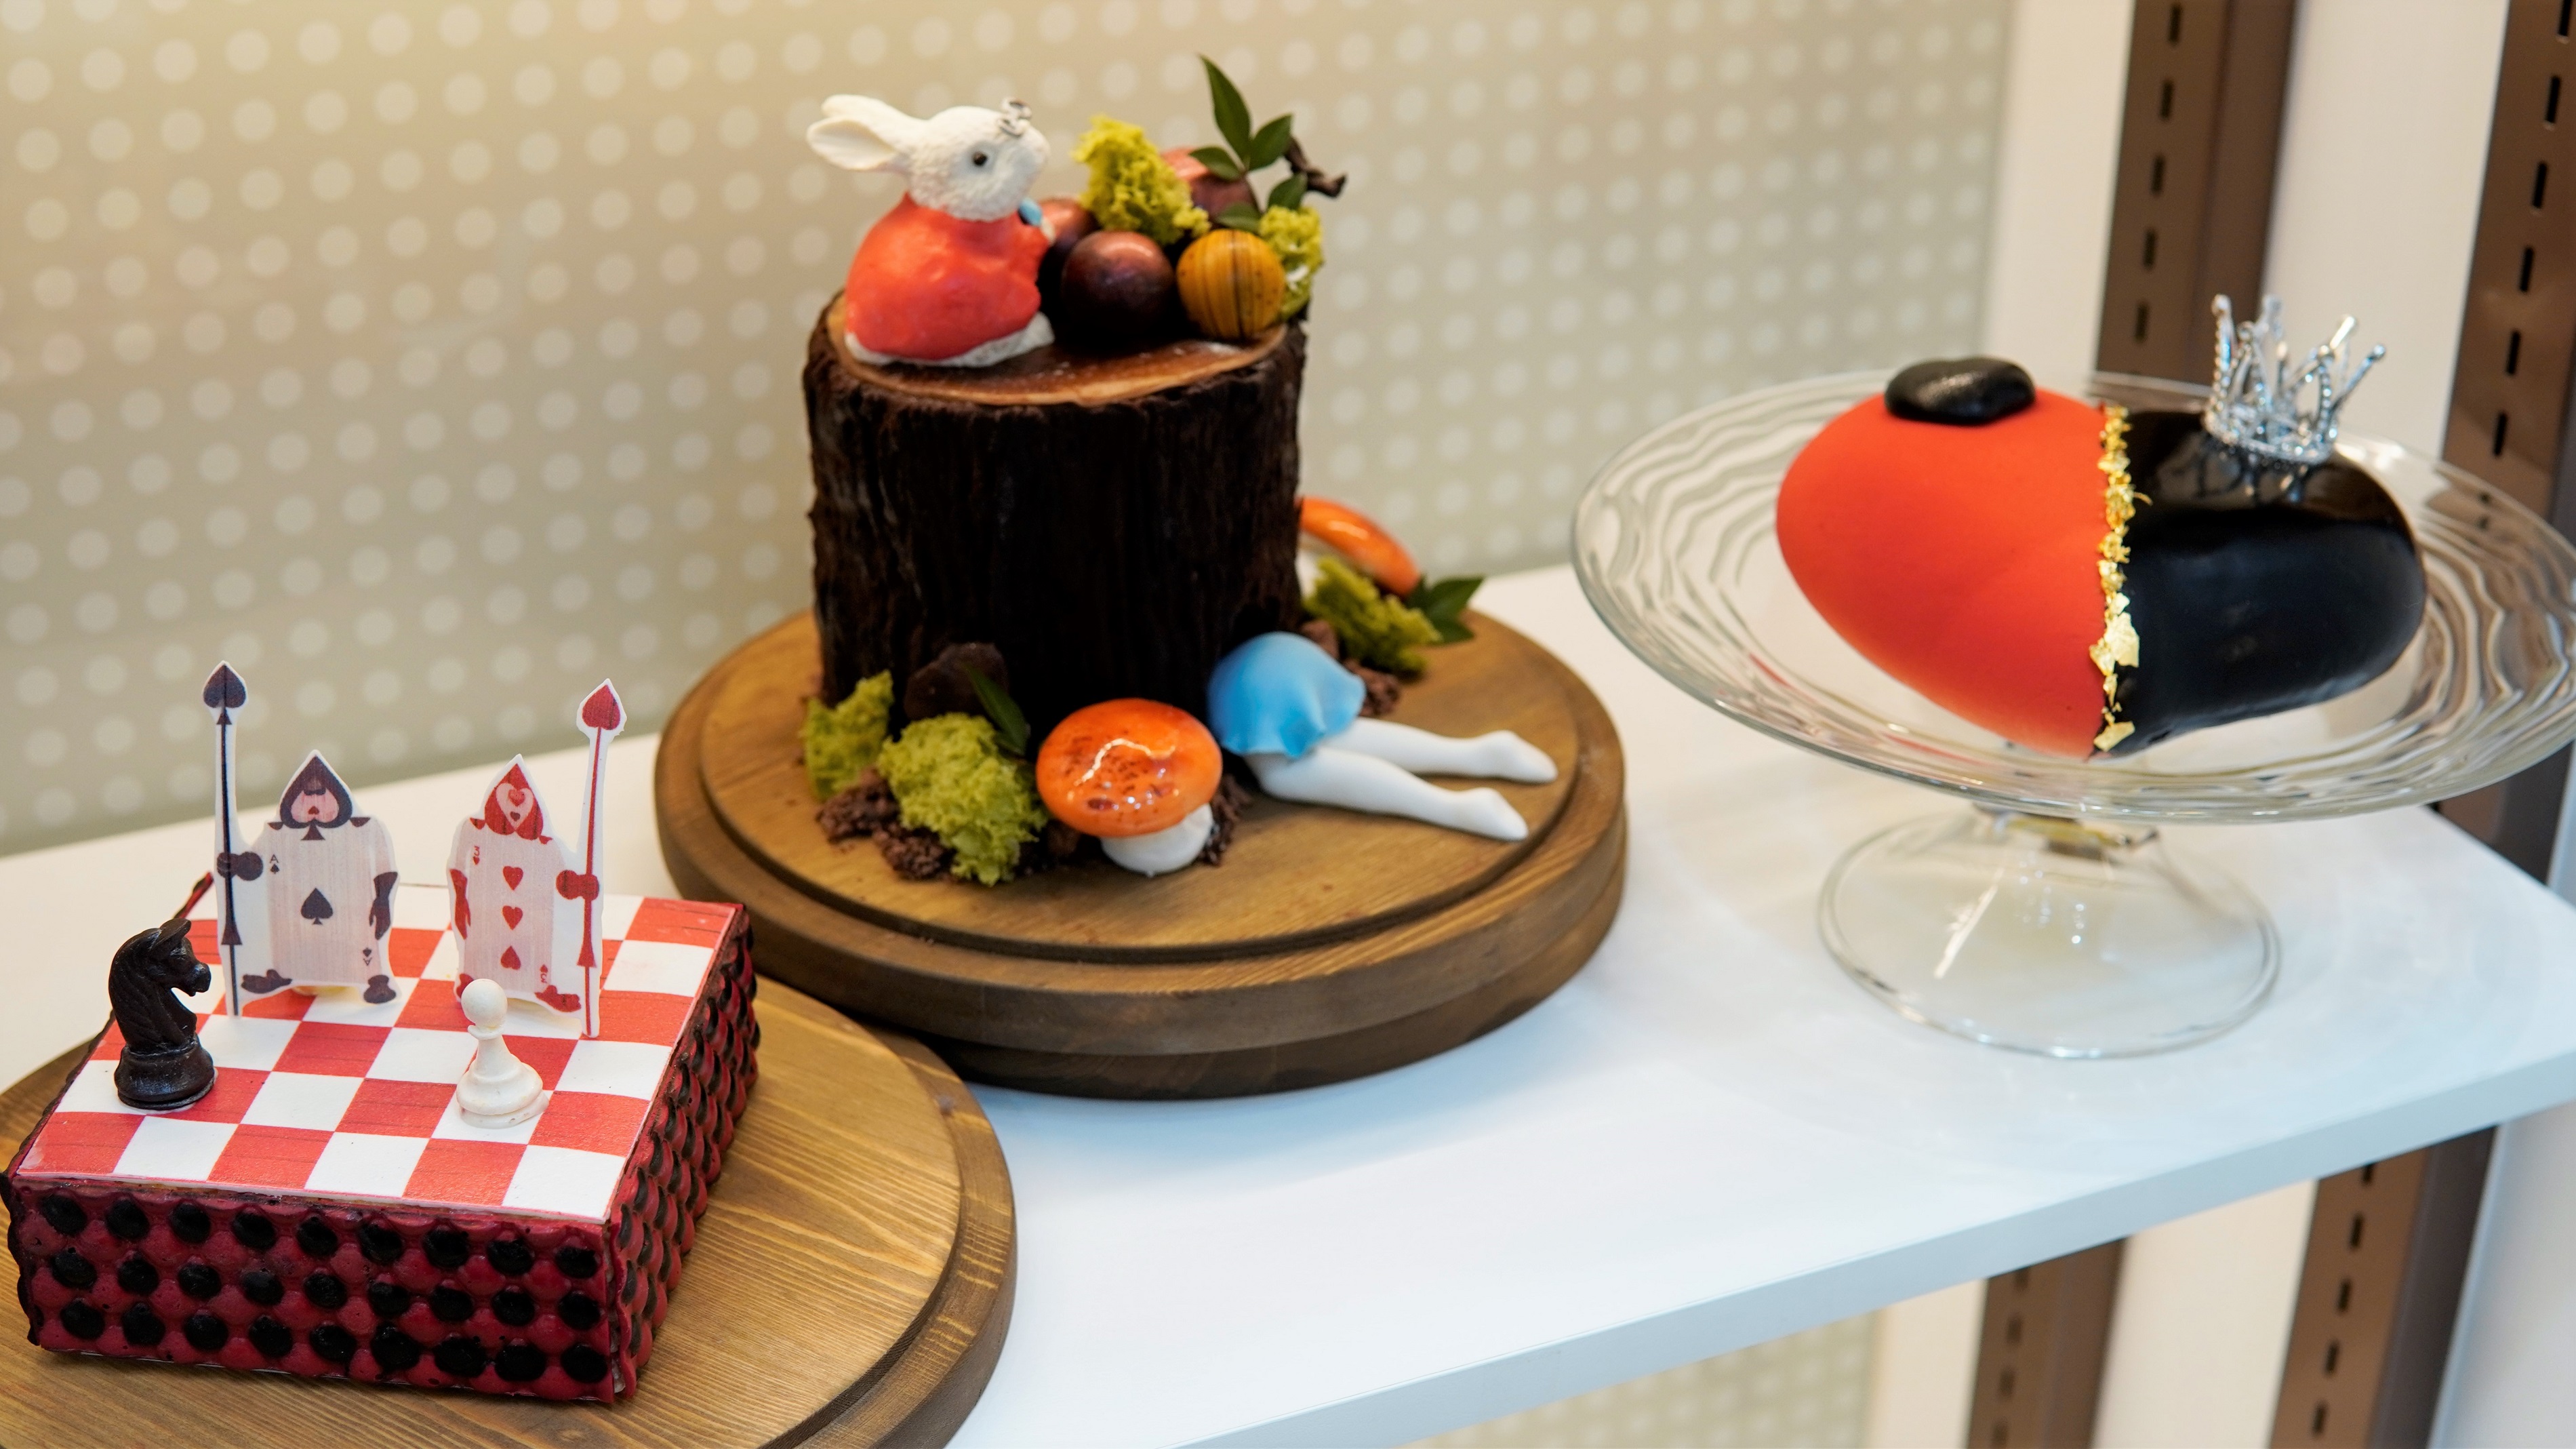 【美食】Royal Delights進駐新蒲崗 推多款玩味精緻的酒店級糕餅 